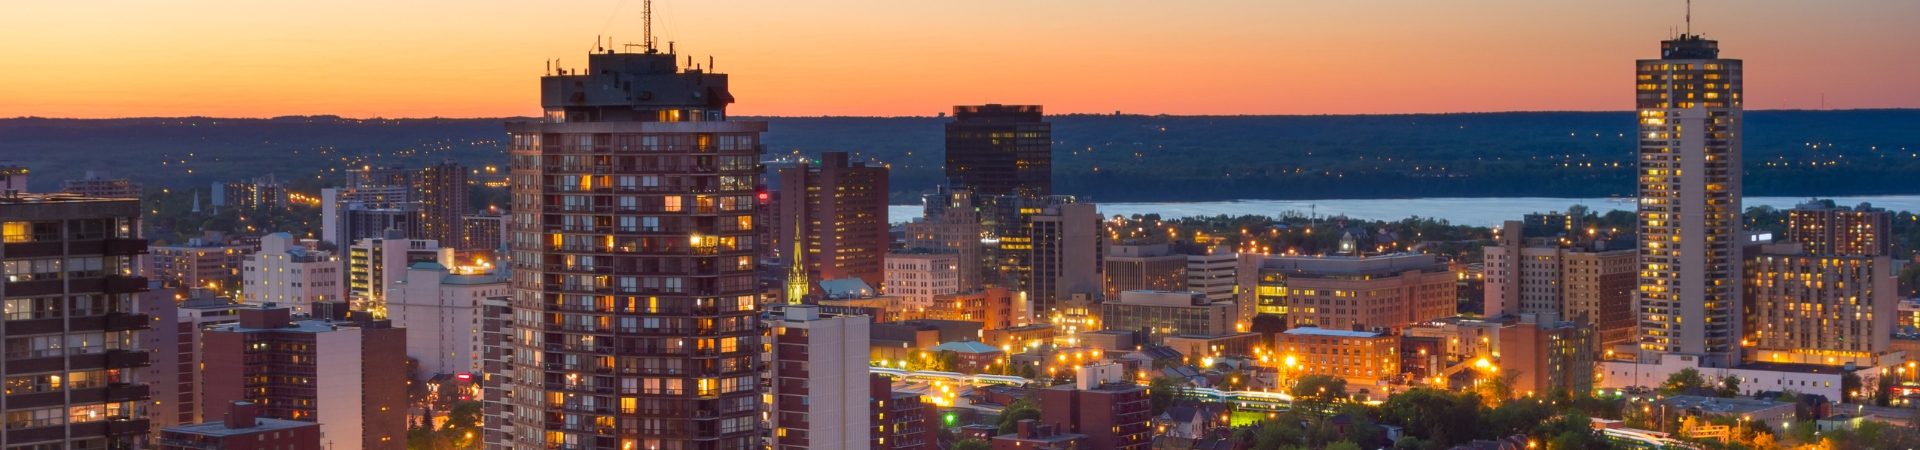 city of Hamilton skyline at night